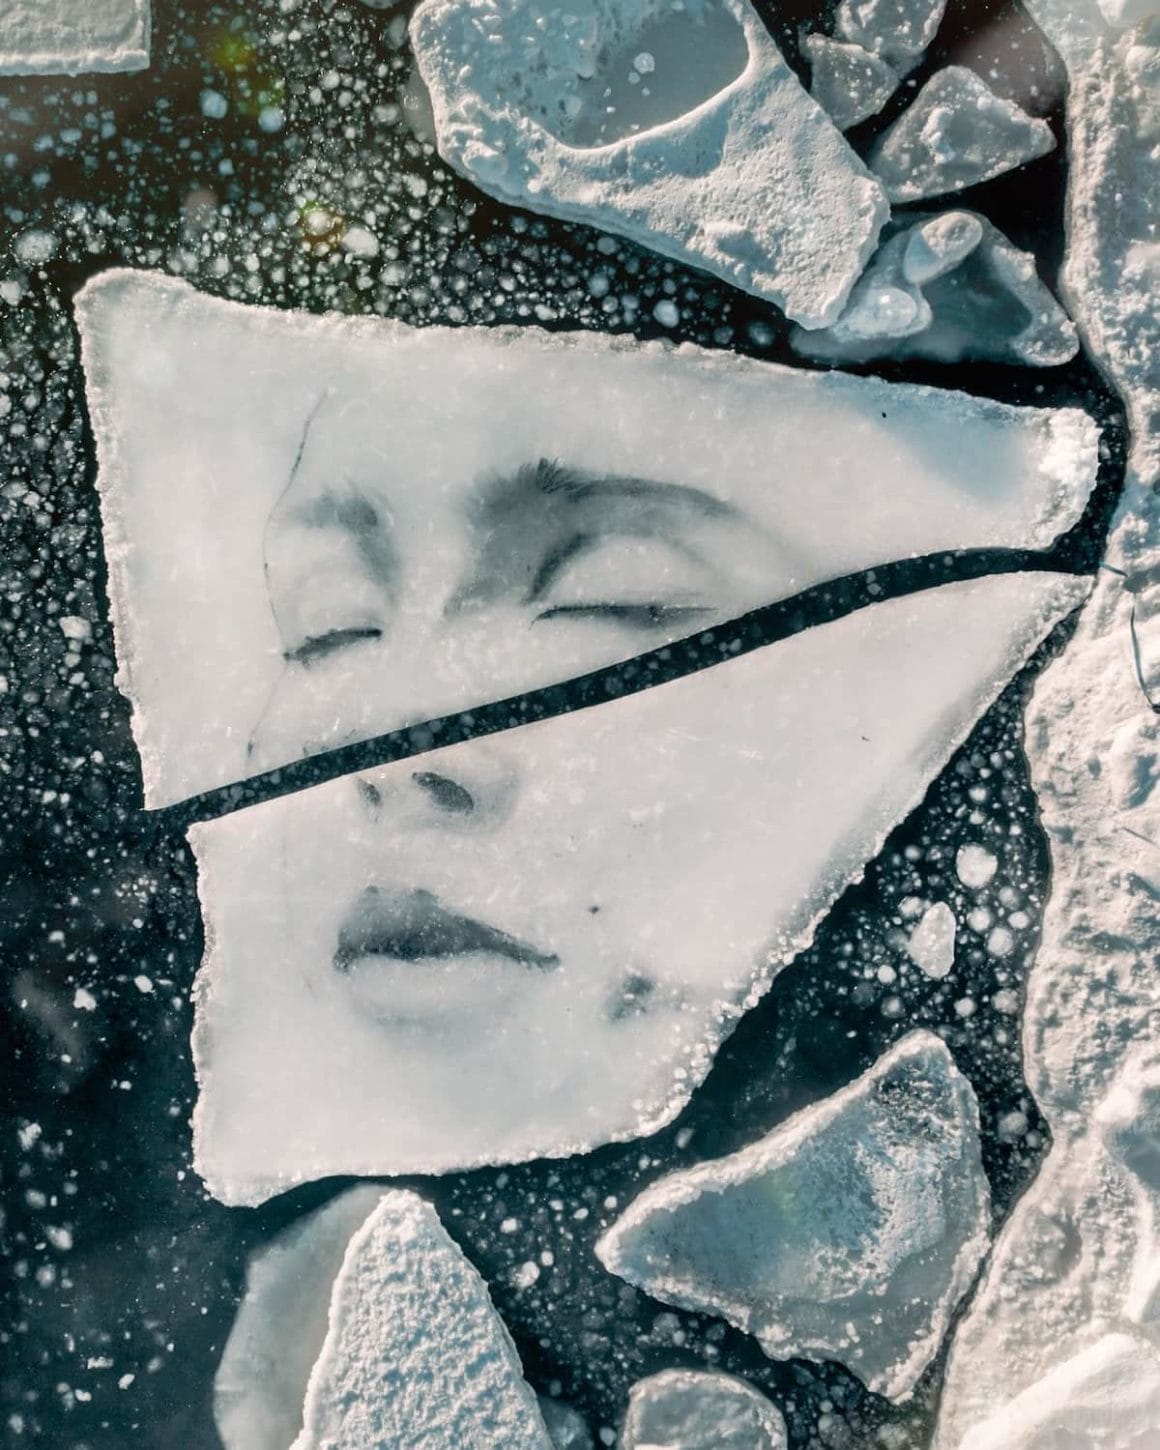 David Popa a réalisé un portrait féminin sur ces fragments de glace.